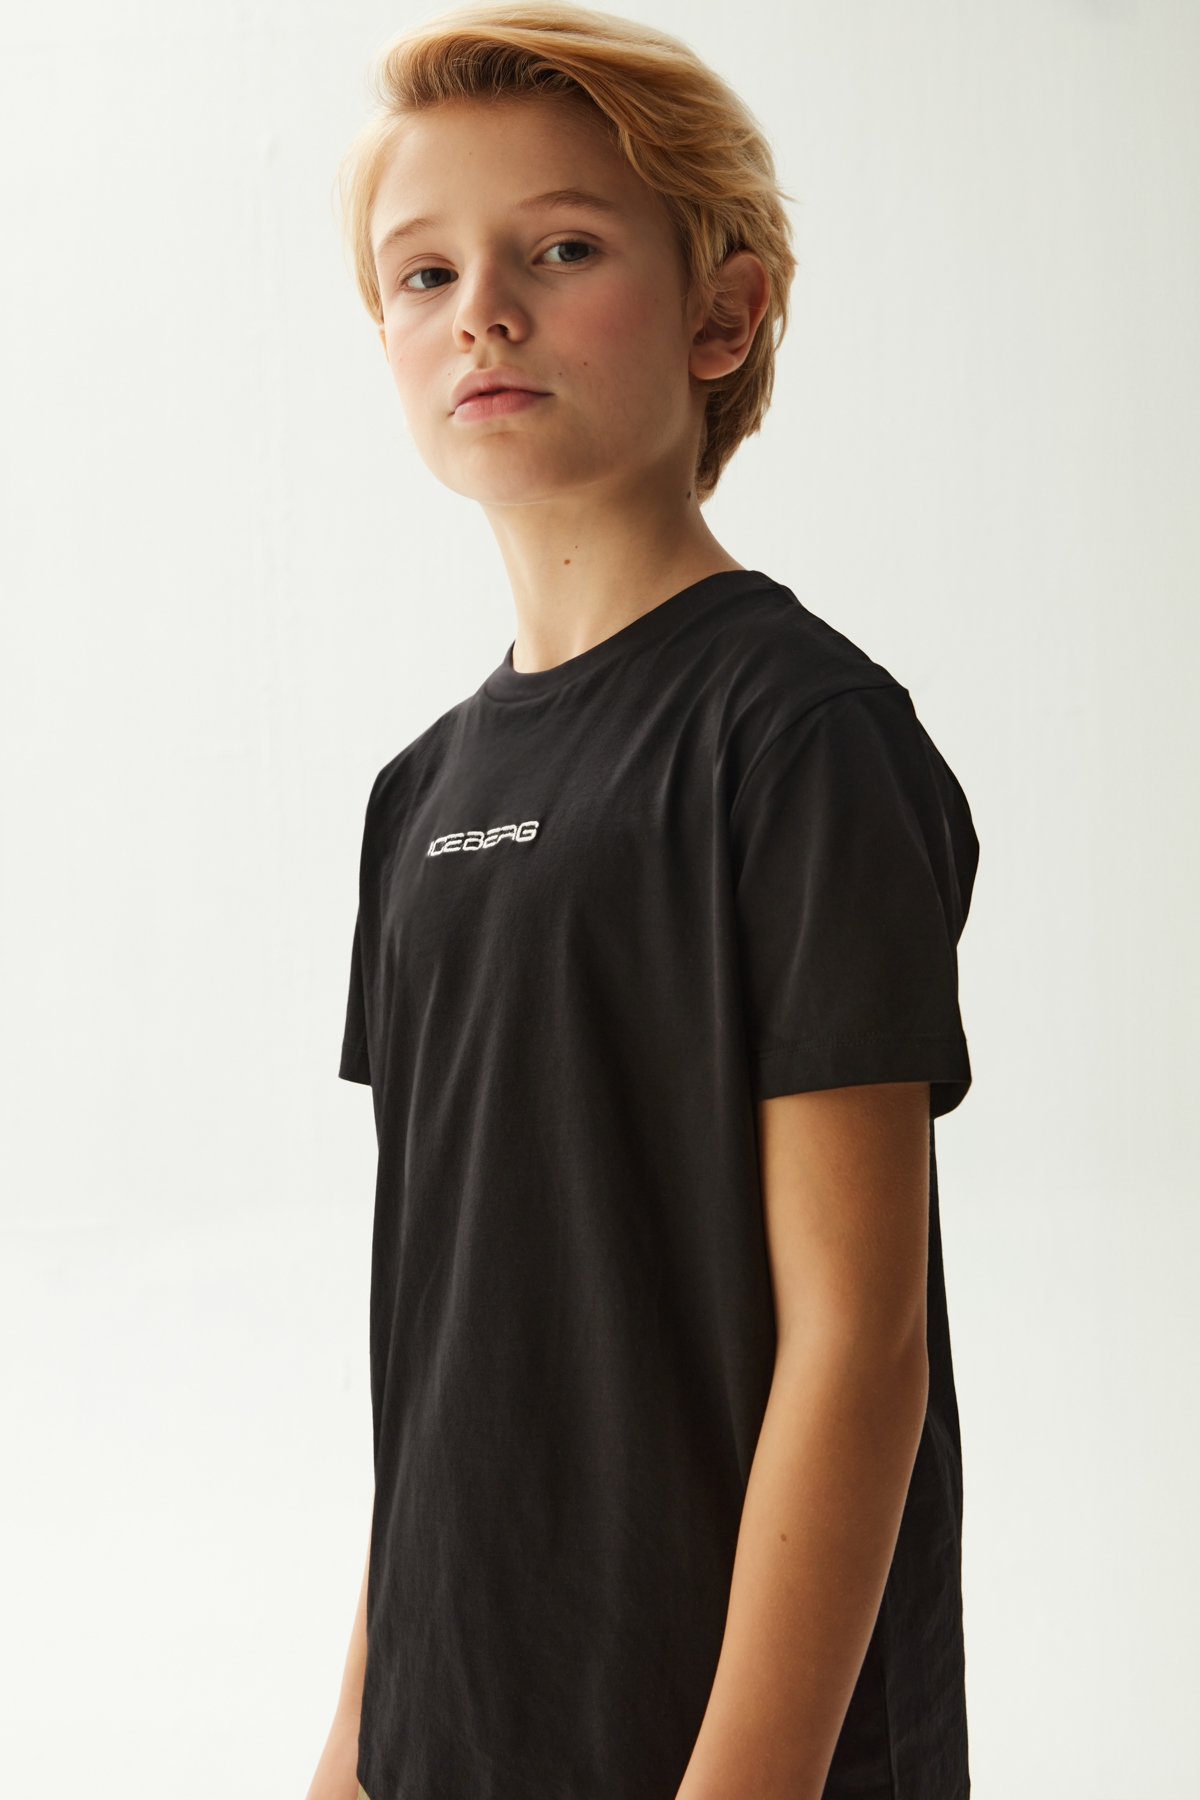 Erkek Çocuk Siyah T-Shirt